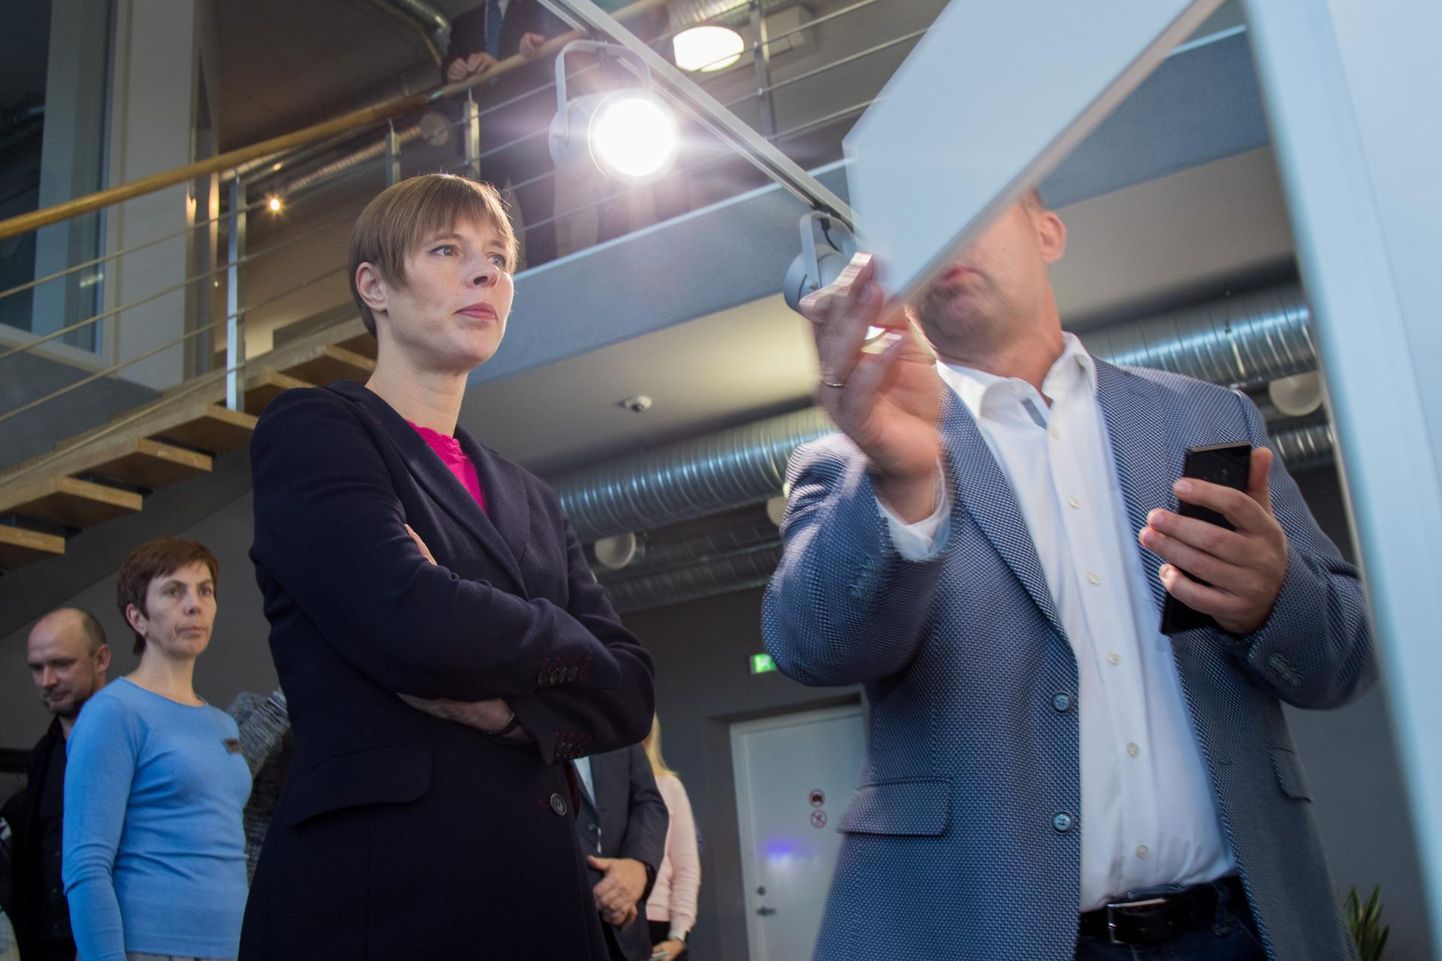 Möödunud aastal käis Eesti Vabariigi president Kersti Kaljulaid Cleveroni tootmisega tutvumas. Ettevõtte juhatuse liige Arno Kütt tutvustas talle uudseid pakiauto­maate.